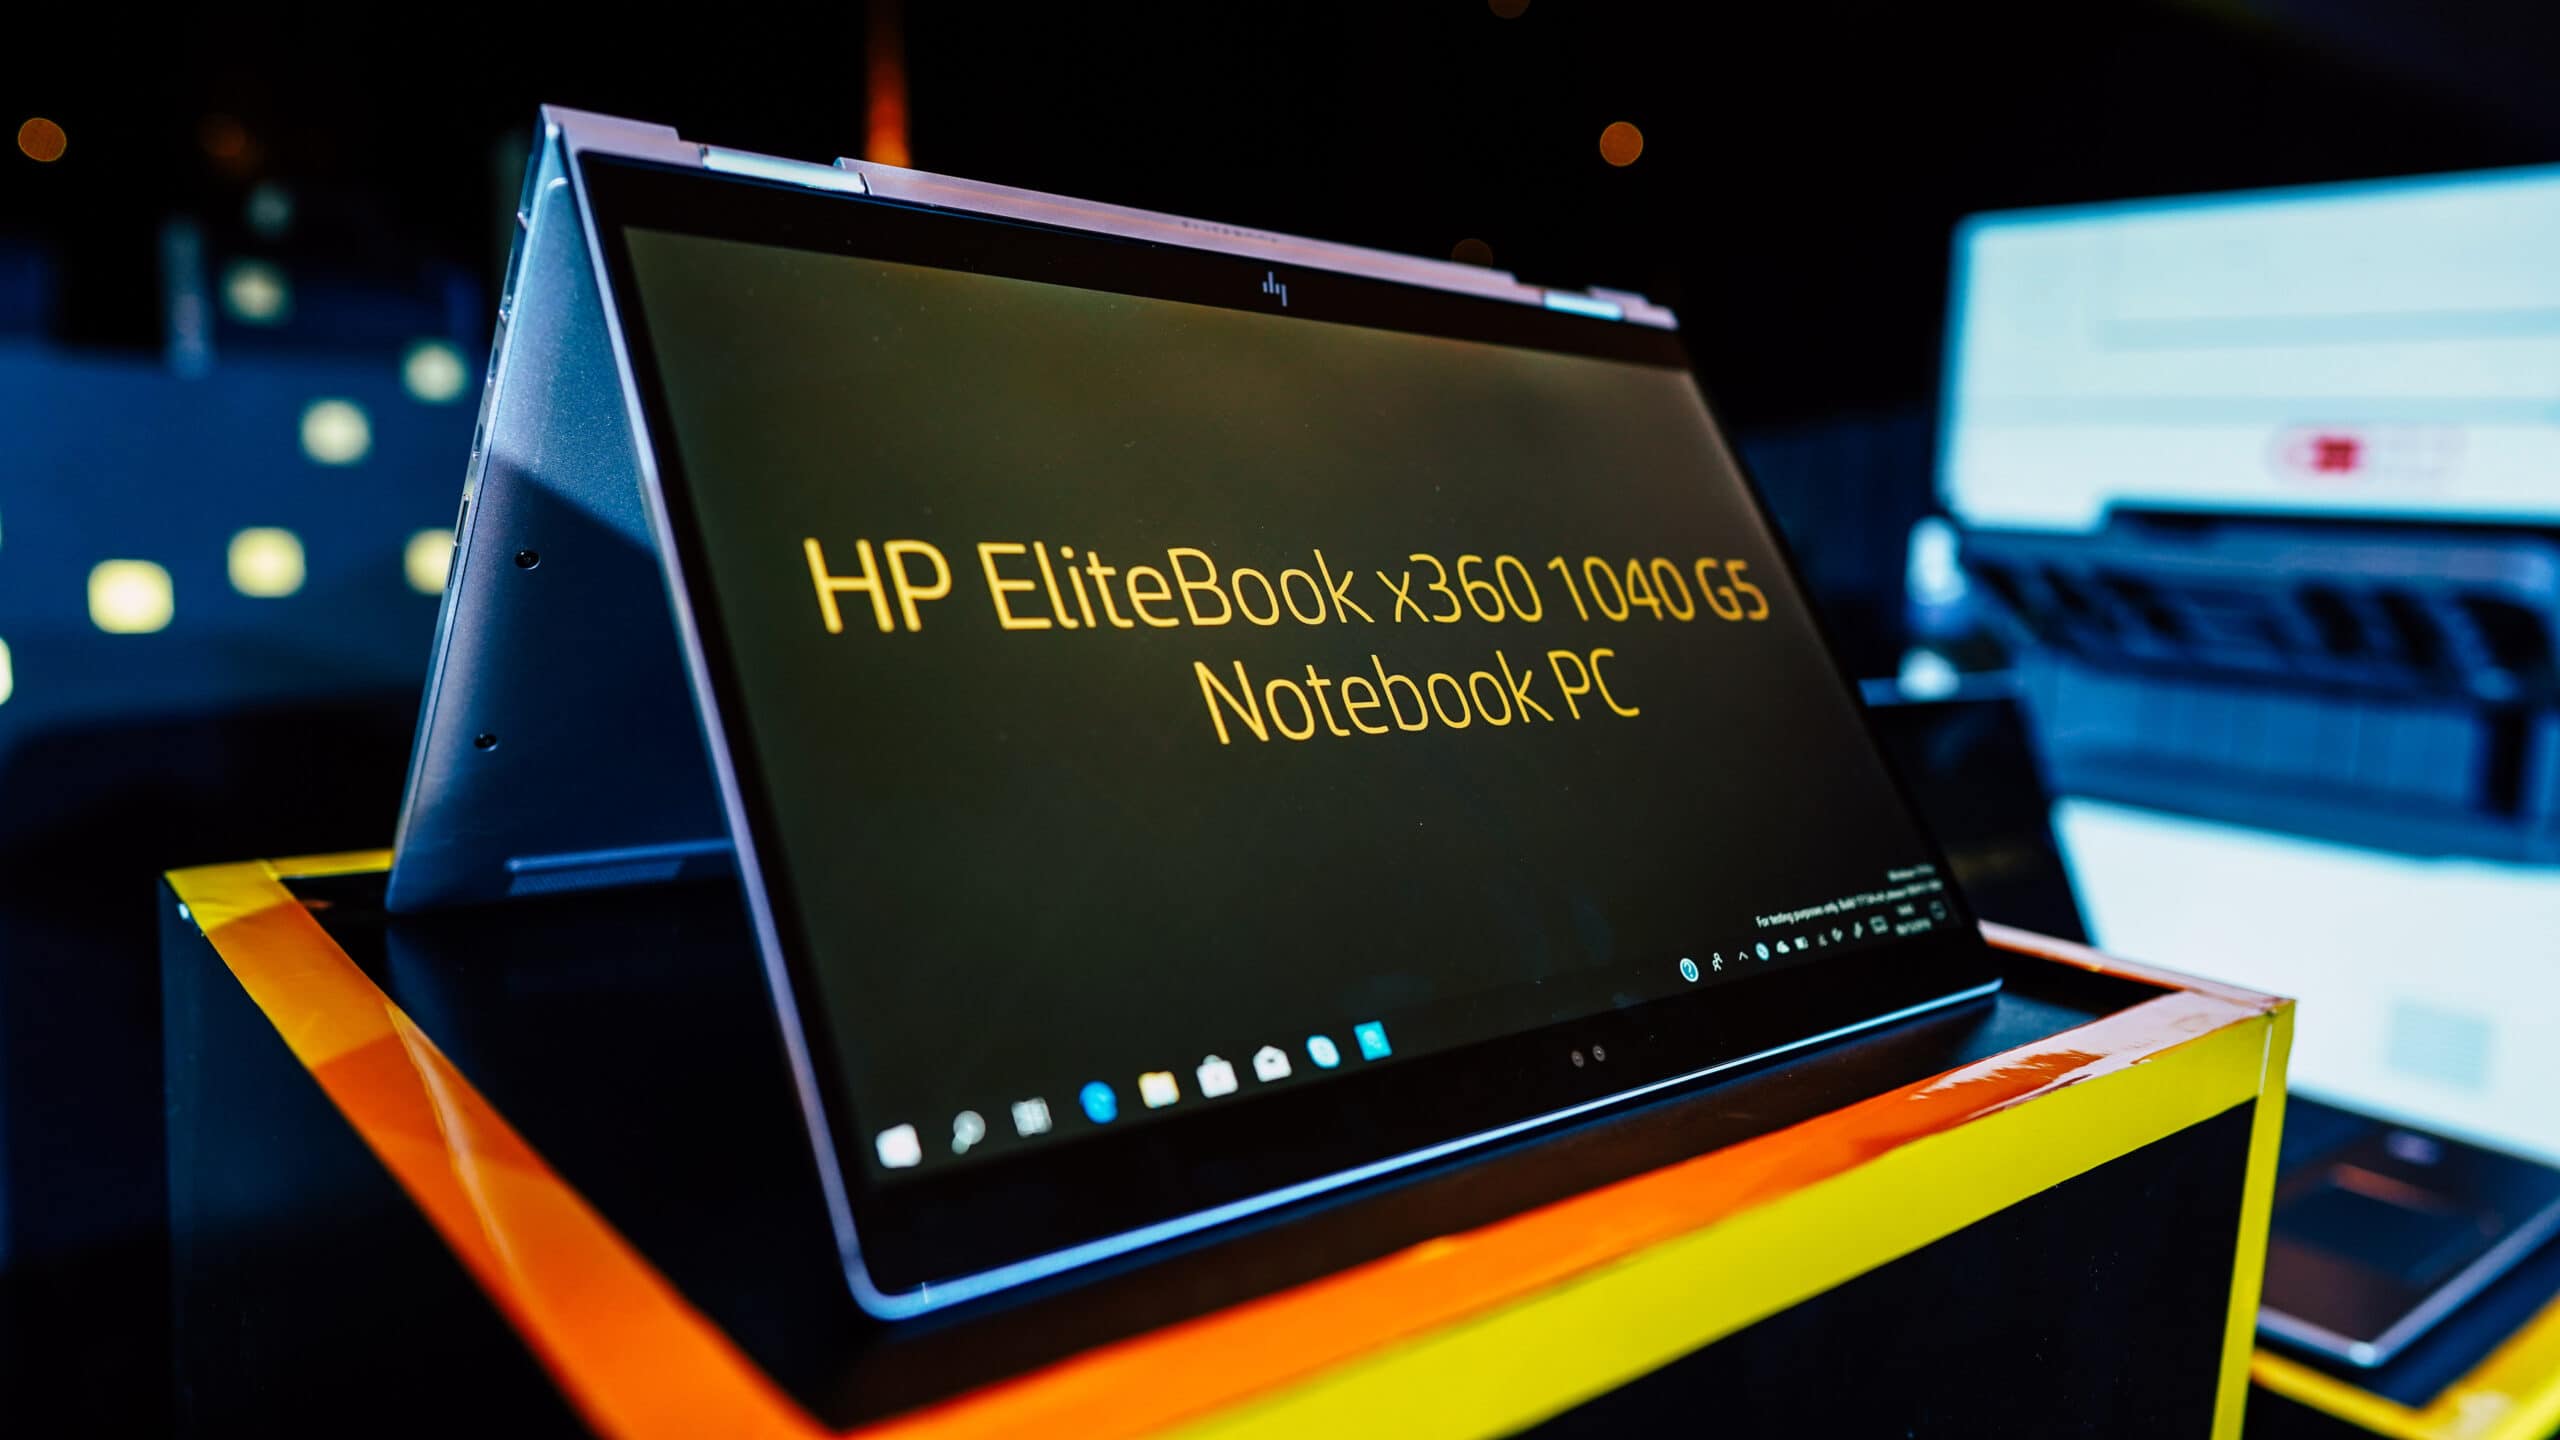 HP EliteBook x360 1040 G5 on display